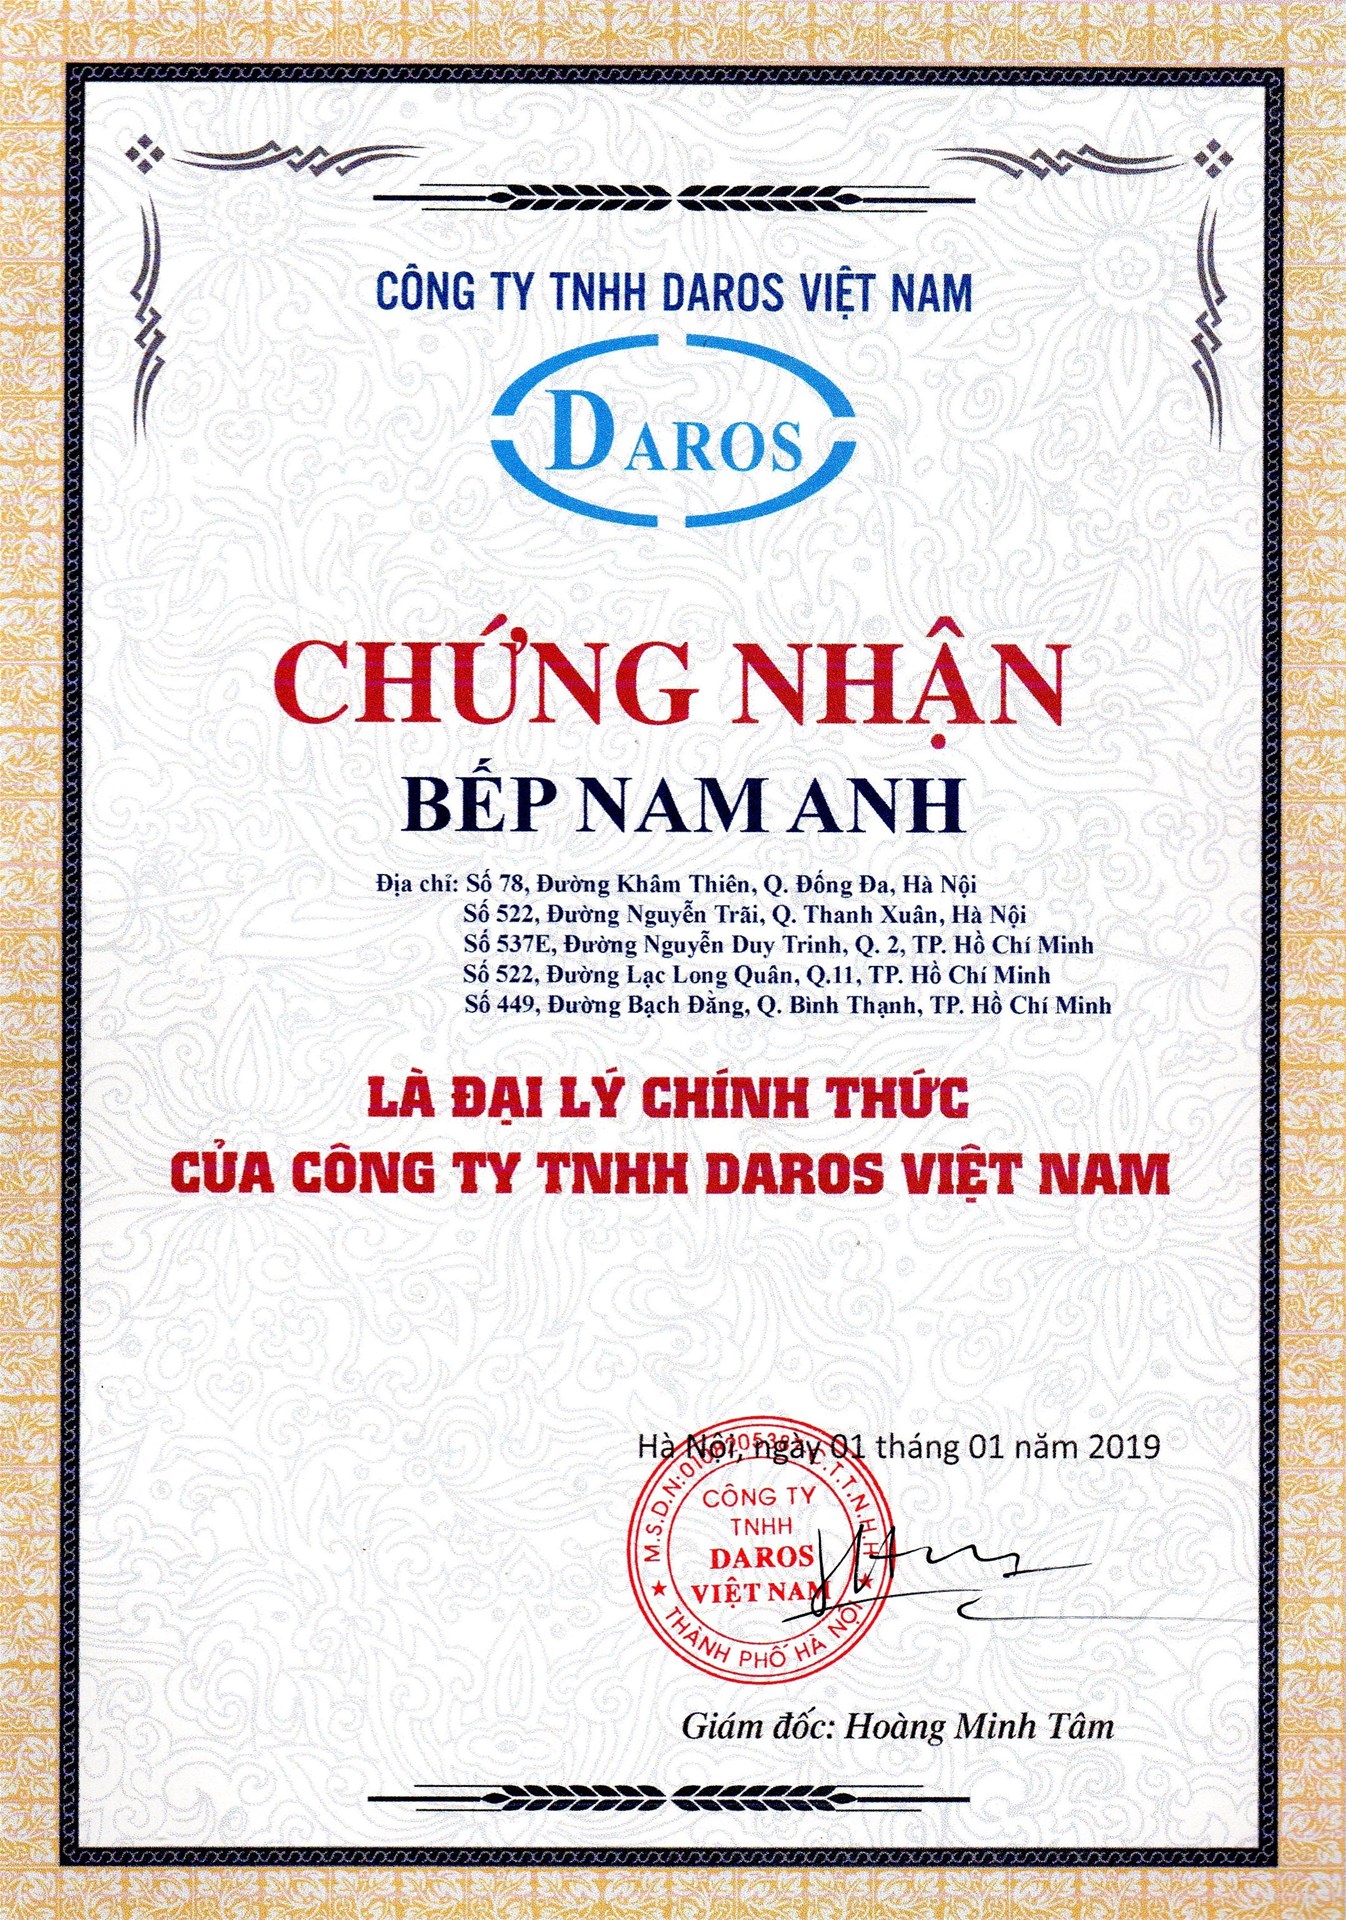 chung-nhan-bep-nam-anh-la-dai-ly-uy-quyen-ban-bon-tam-daros-chuan-chinh-hang